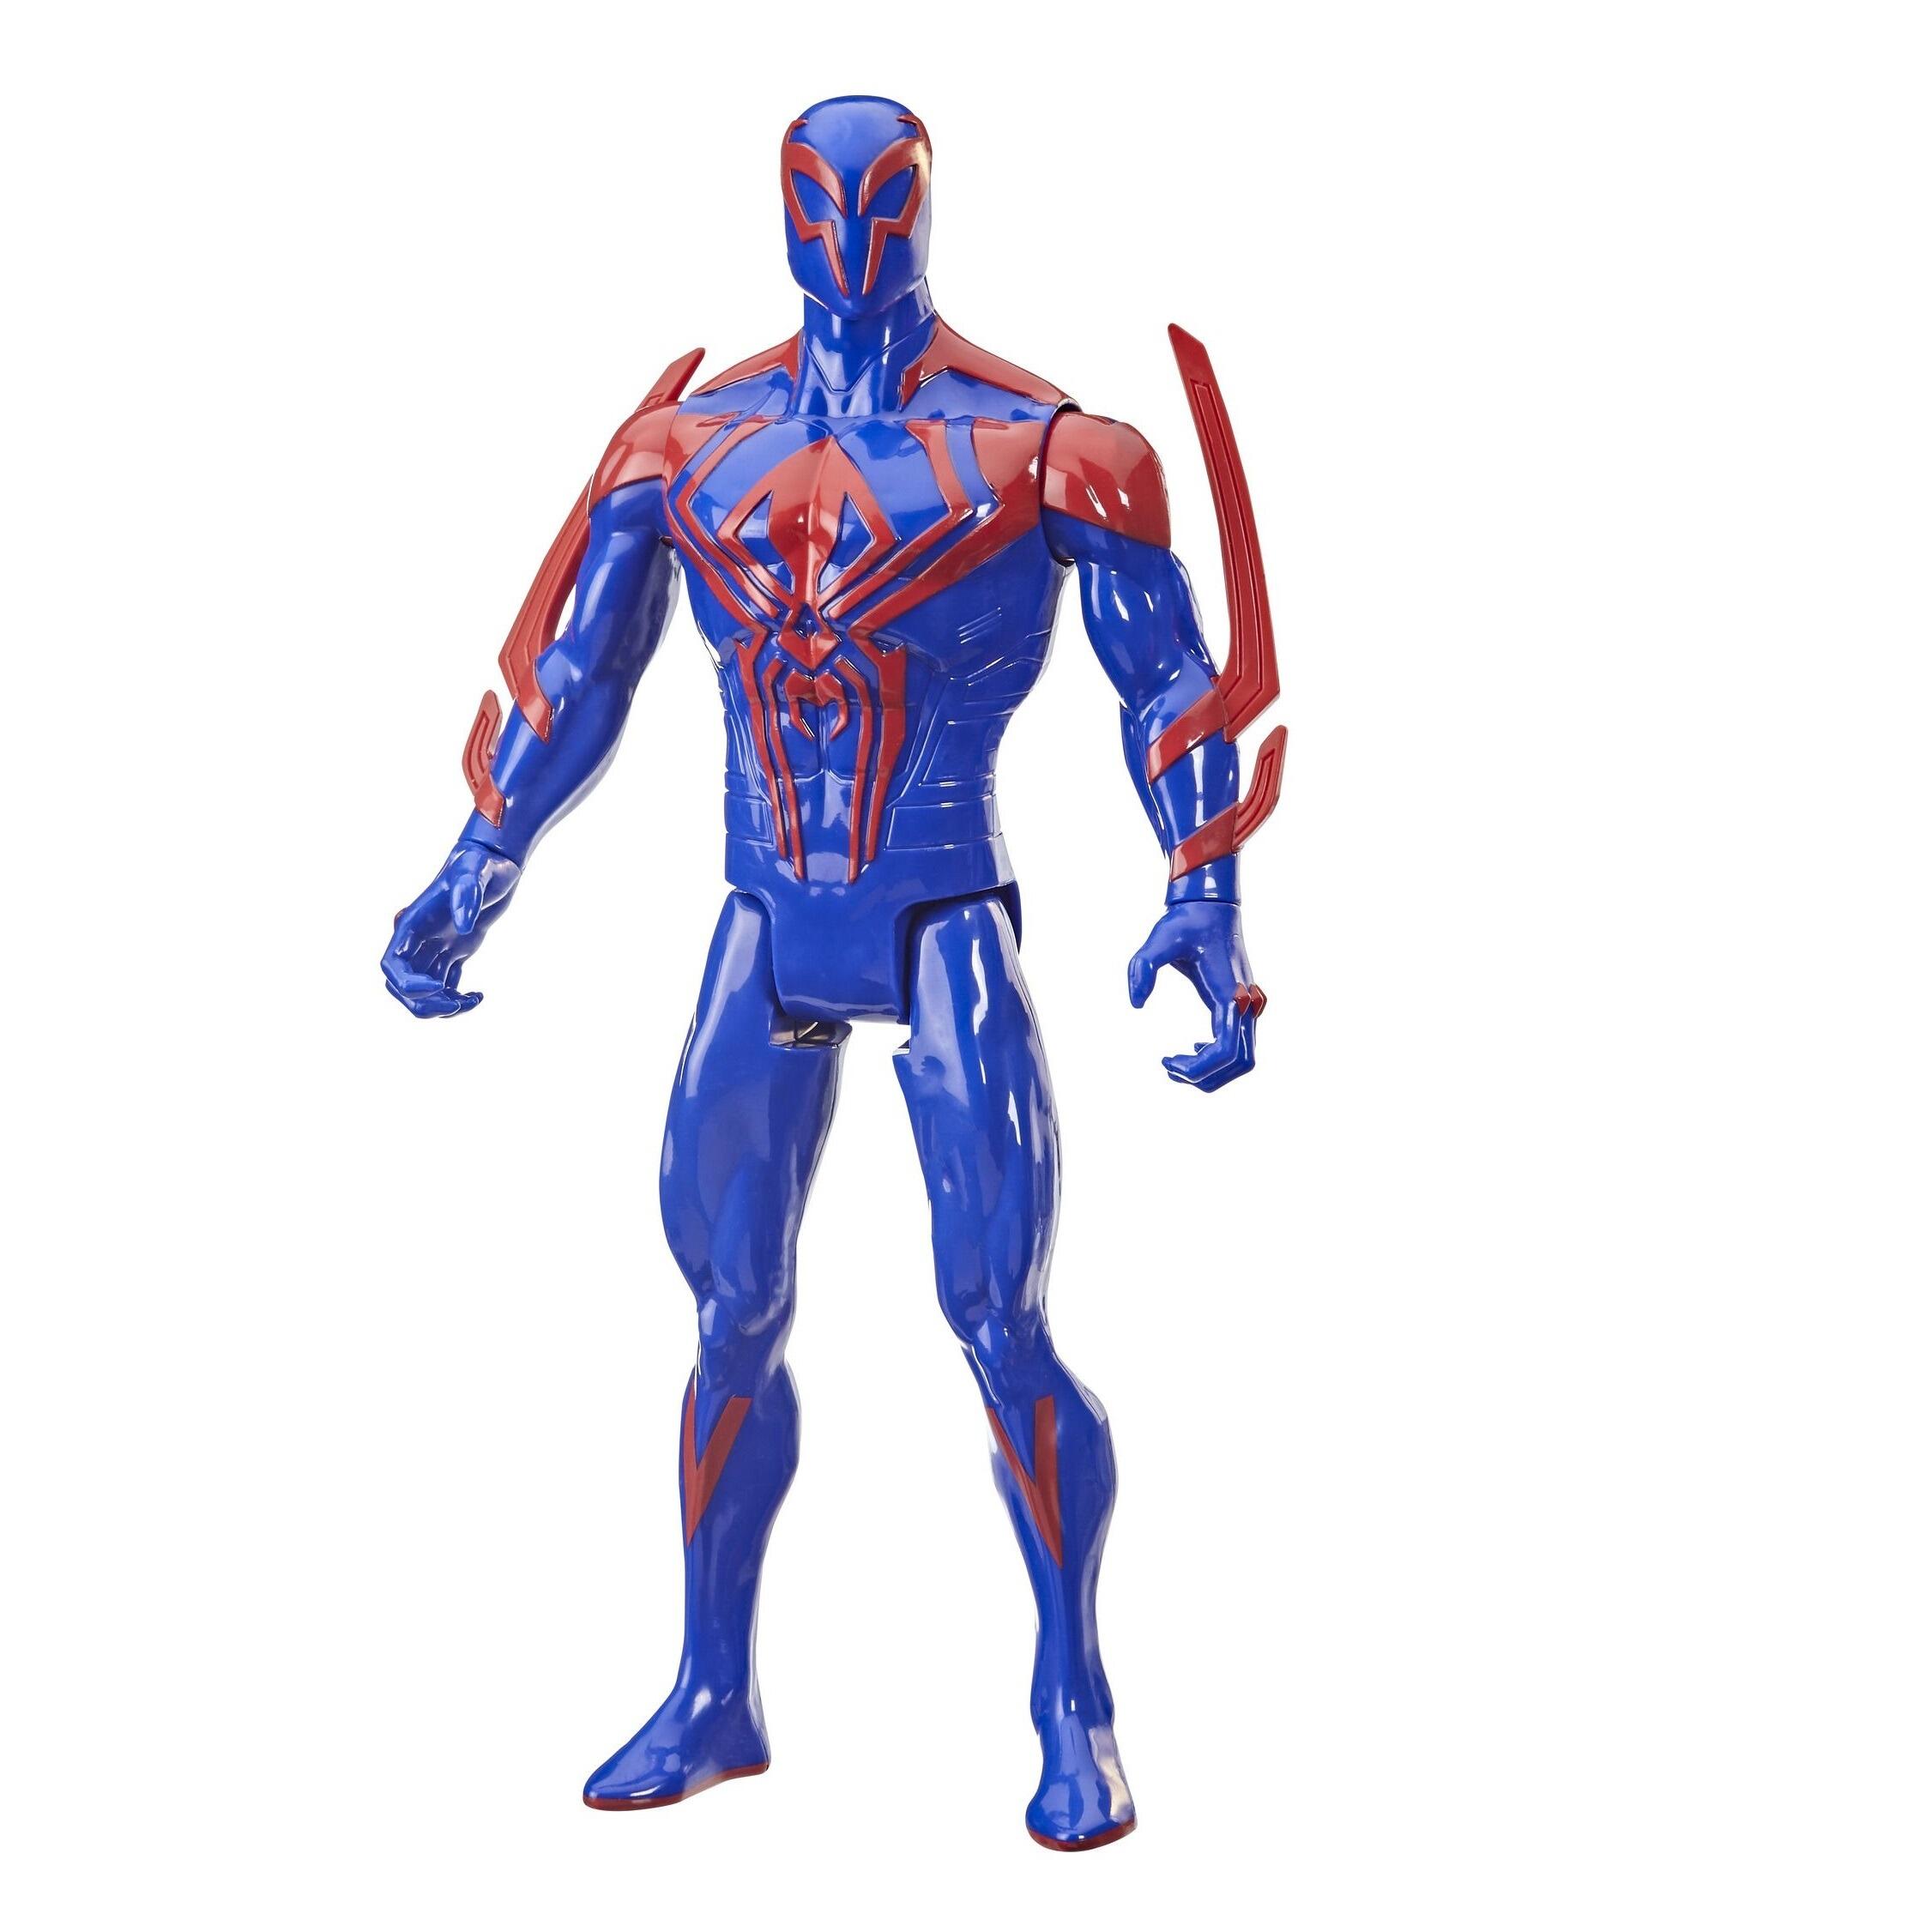 Marvel Avengers Titan Hero Spider-Man 2099